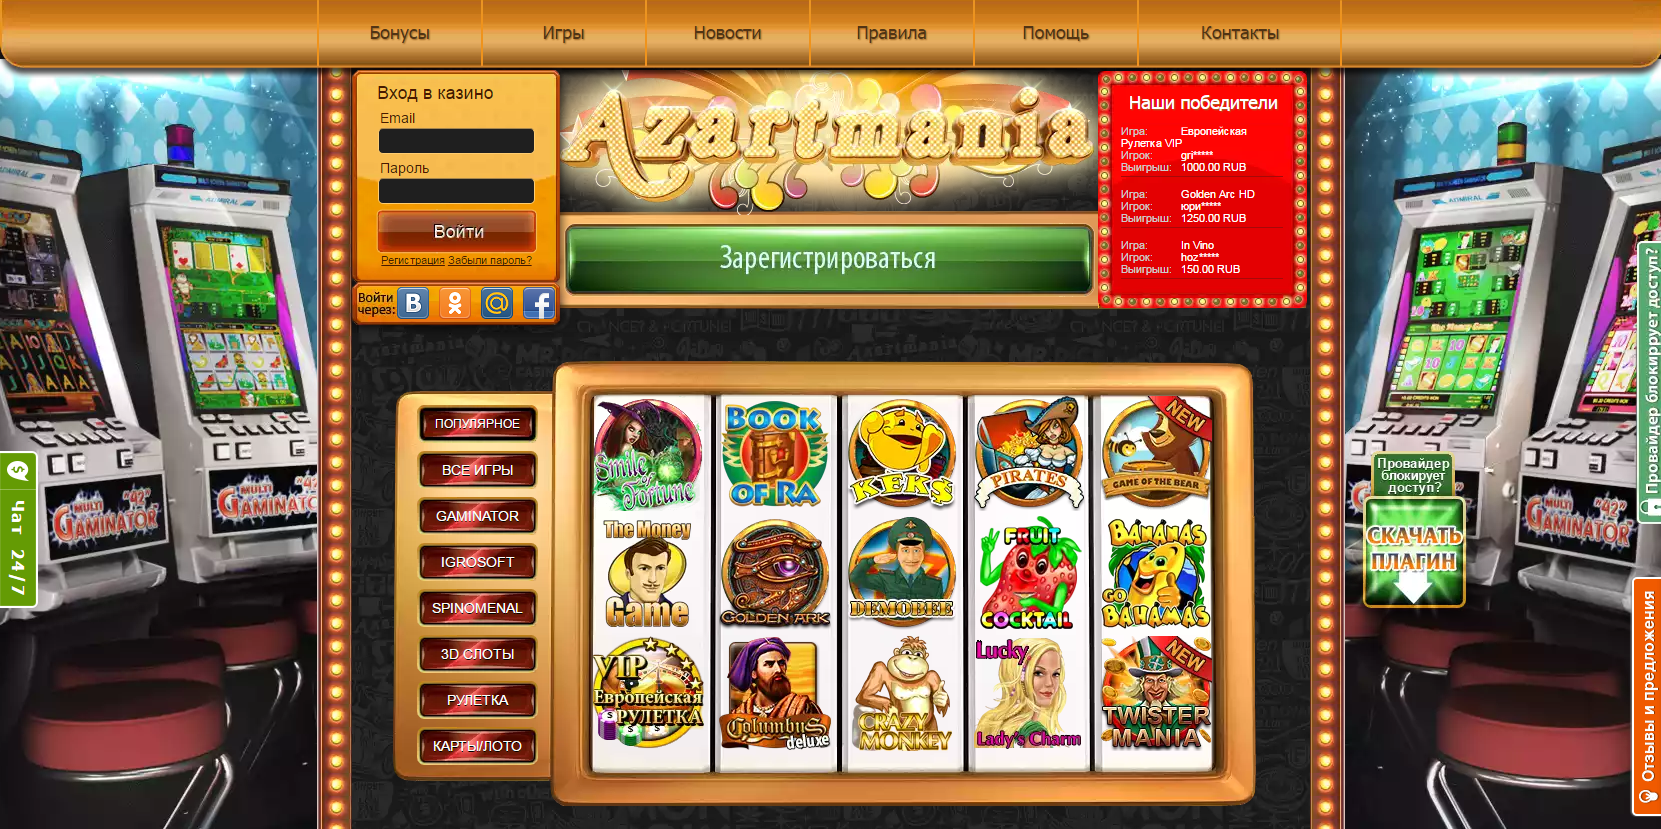 Игровой клуб азартмания игровые автоматы онлайн вулкан максимум игровые автоматы официальный сайт